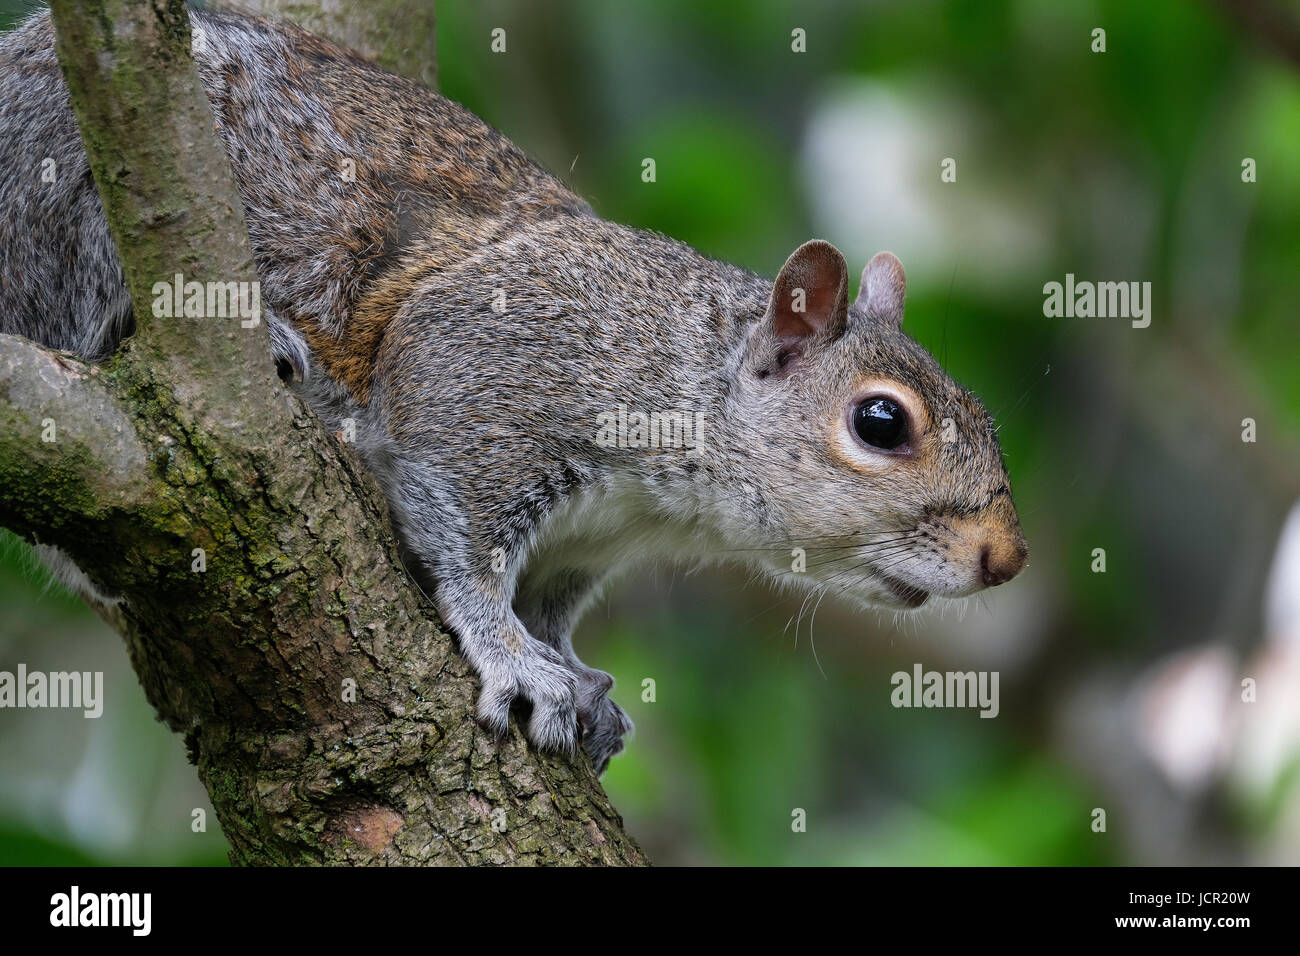 Sciurus carolinensis, common name eastern gray squirrel or grey squirrel depending on region, is a tree squirrel in the genus Sciurus. Stock Photo